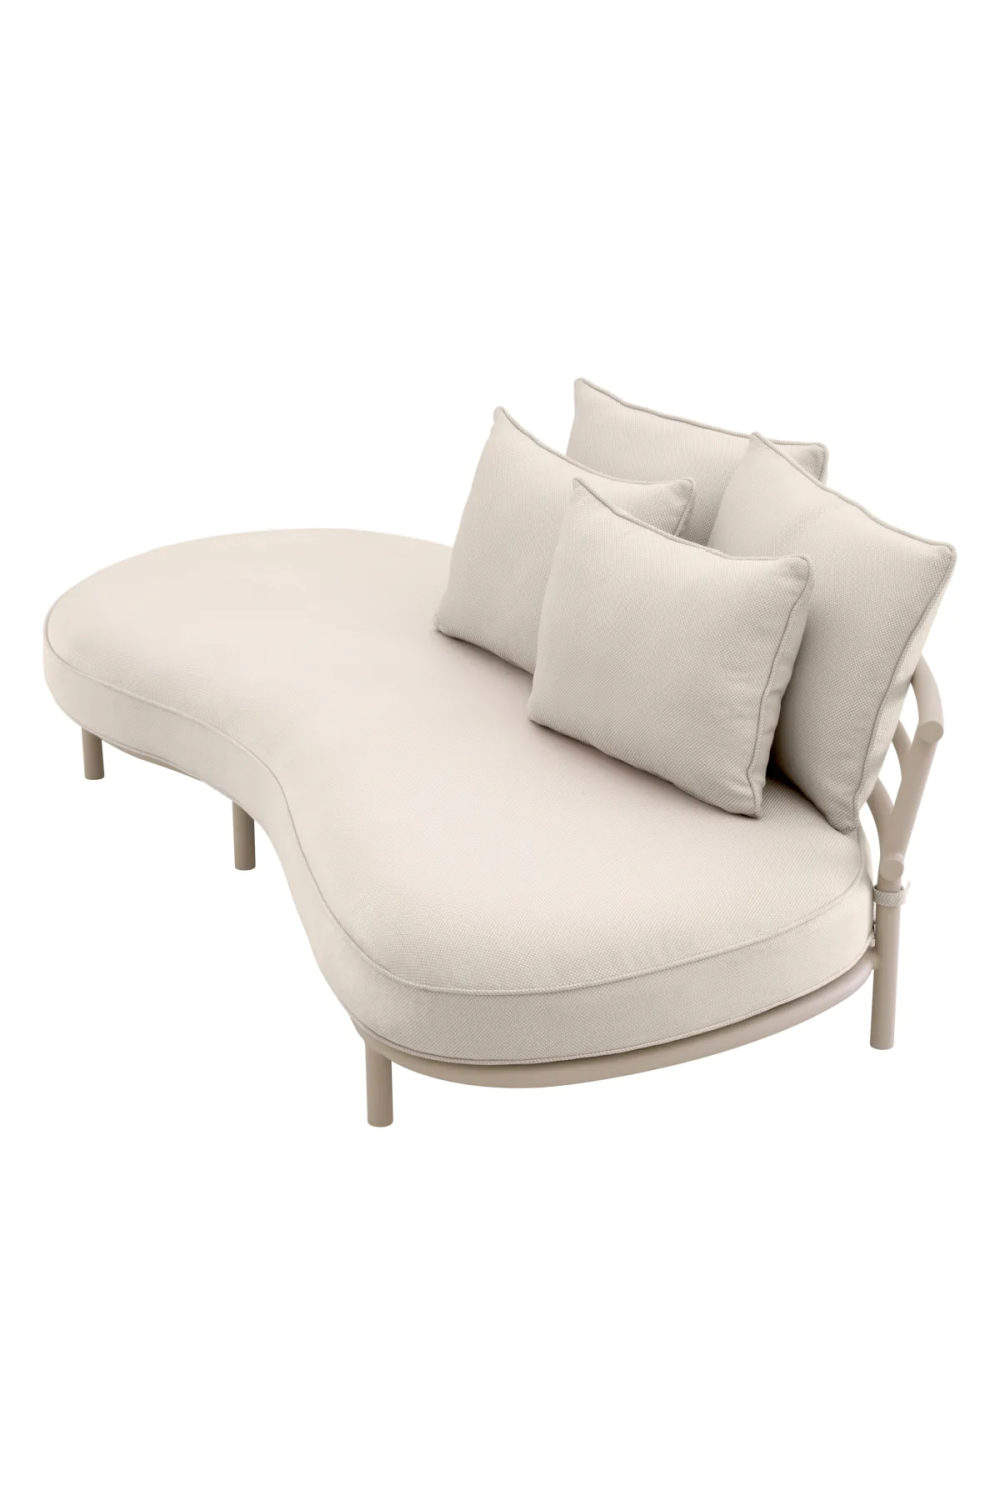 White Modern Outdoor Sofa | Eichholtz Laguno | Oroa.com